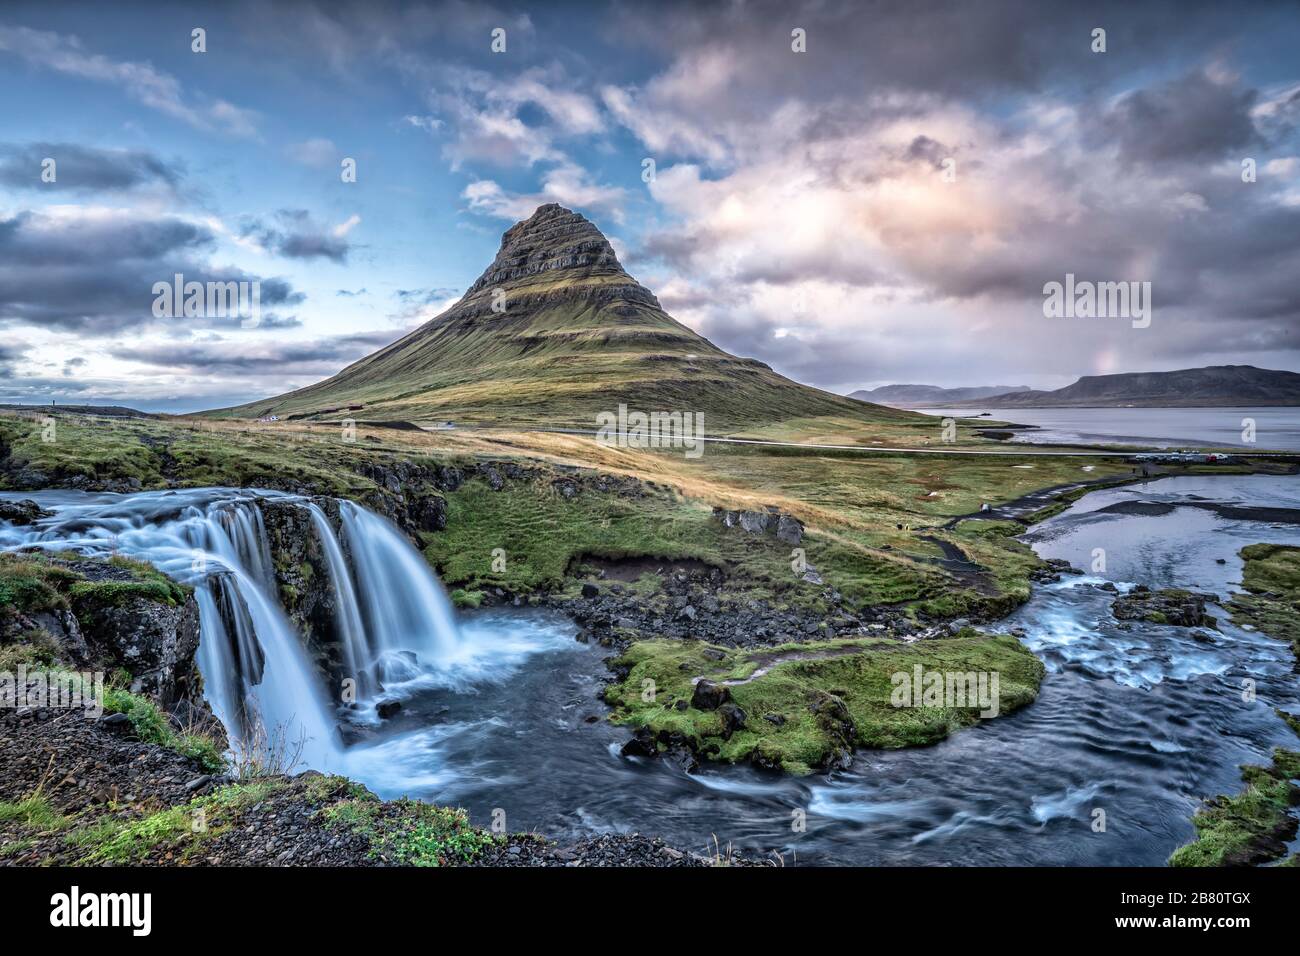 Famosa montagna di Kirkufell sulla penisola di snaefellswness nell'Islanda occidentale, fotografia di paesaggio famosa montagna di Kirkufell sulla penisola di snaefellswness nell'Islanda occidentale, fotografia di paesaggio Foto Stock